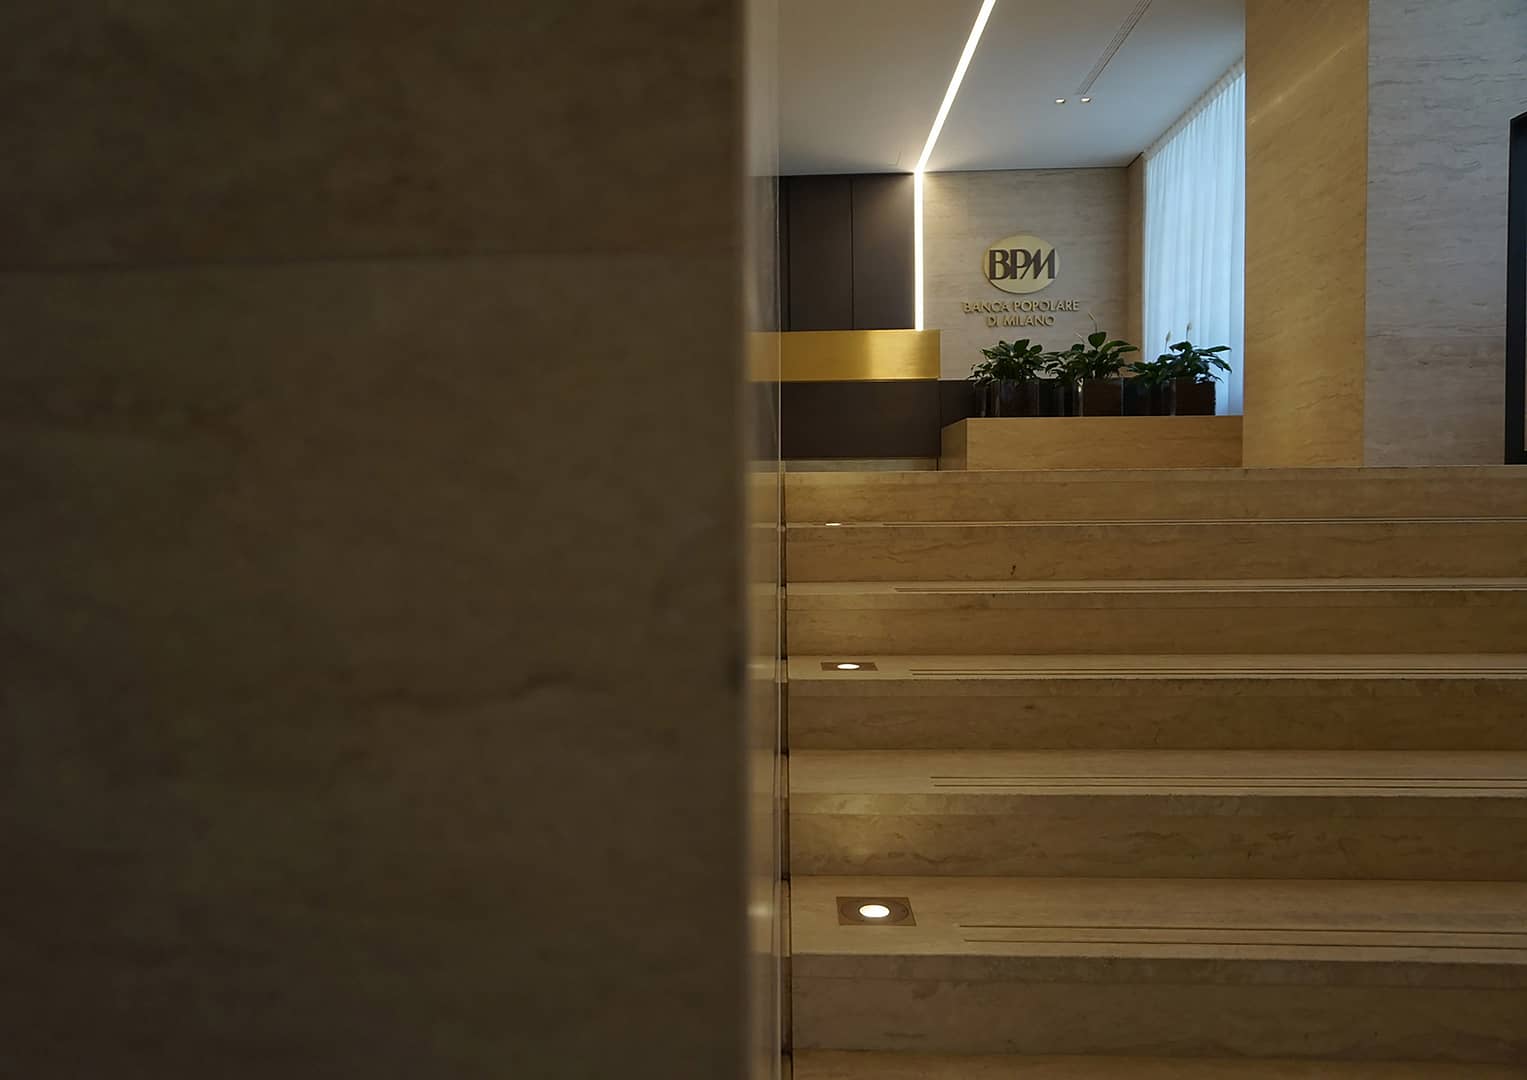 Banco BPM Foyer, vista su ingresso con focus su scale e marchio su fondo